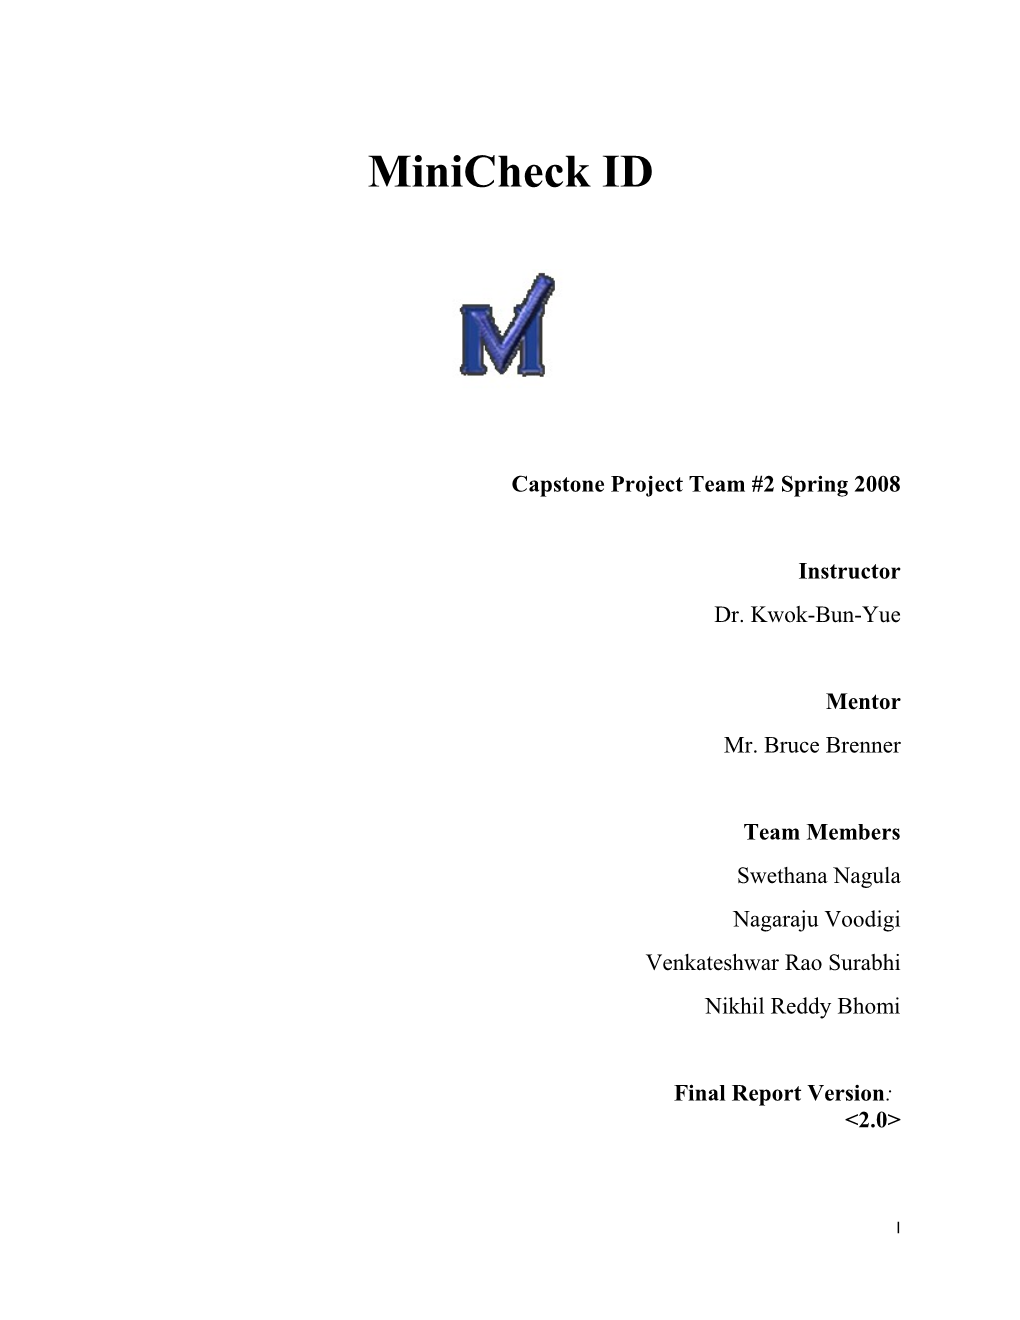 Minicheck ID Technical Report Version 2.0